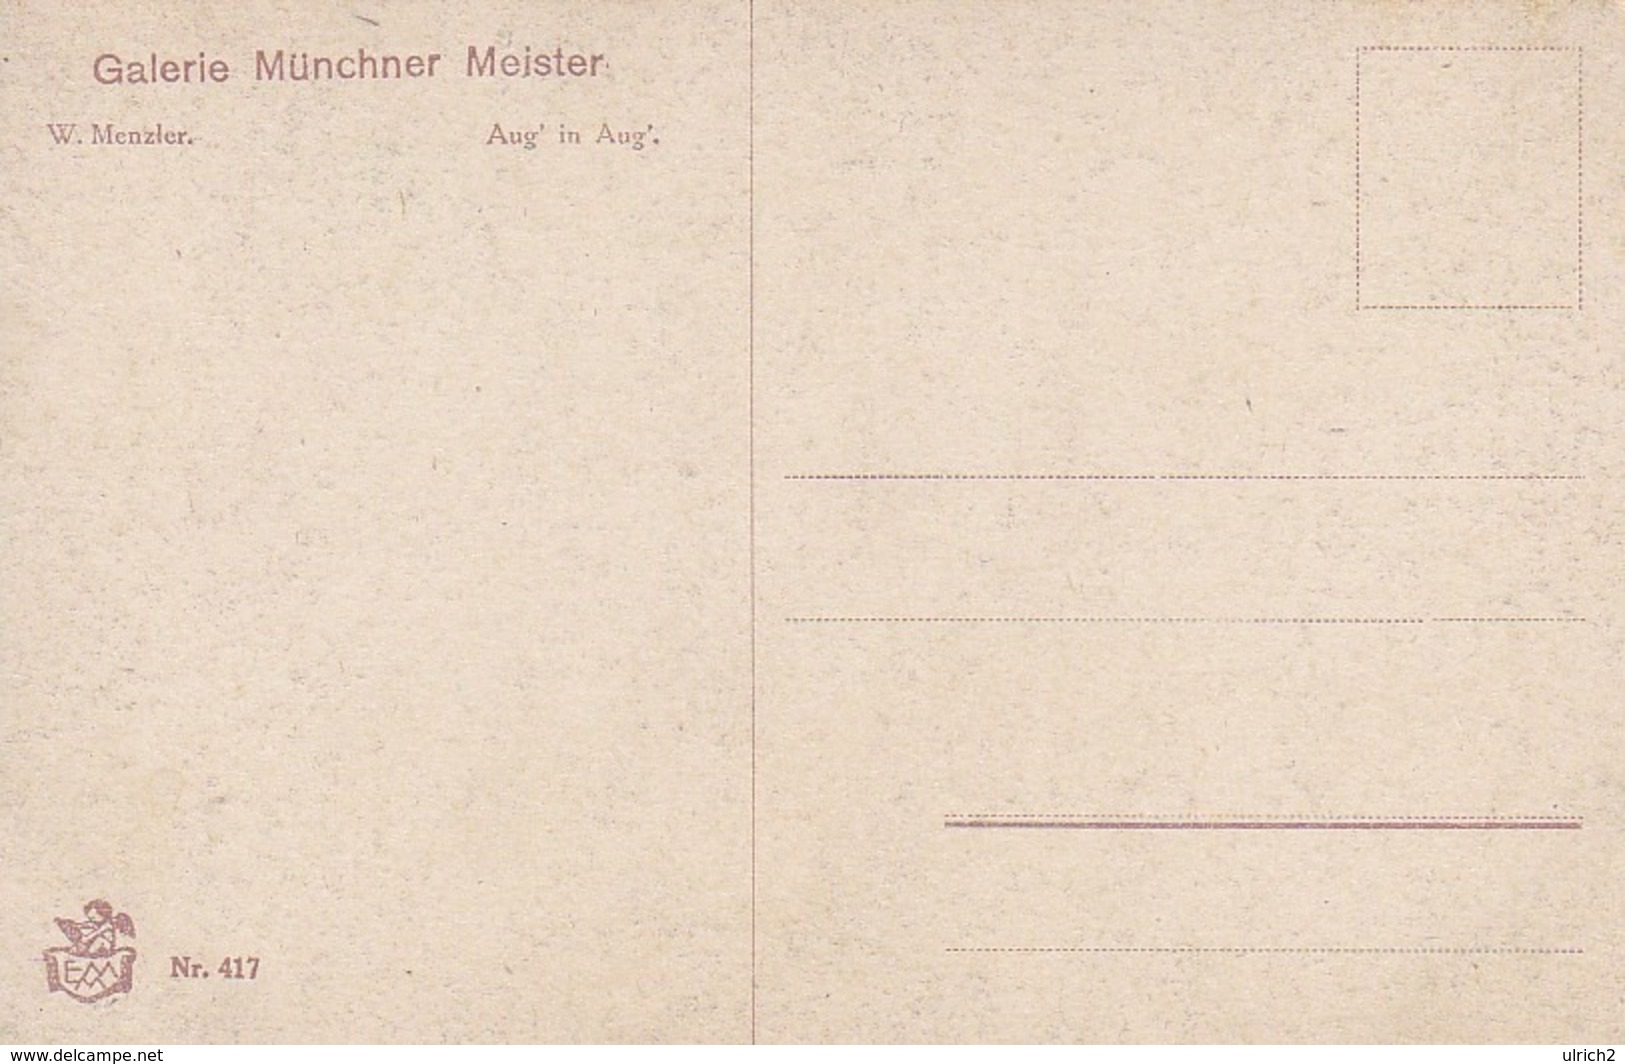 AK Aug' In Aug' - W. Menzler - Liebespaar In Ruderboot - Galerie Münchner Meister - Ca. 1910 (44744) - Coppie